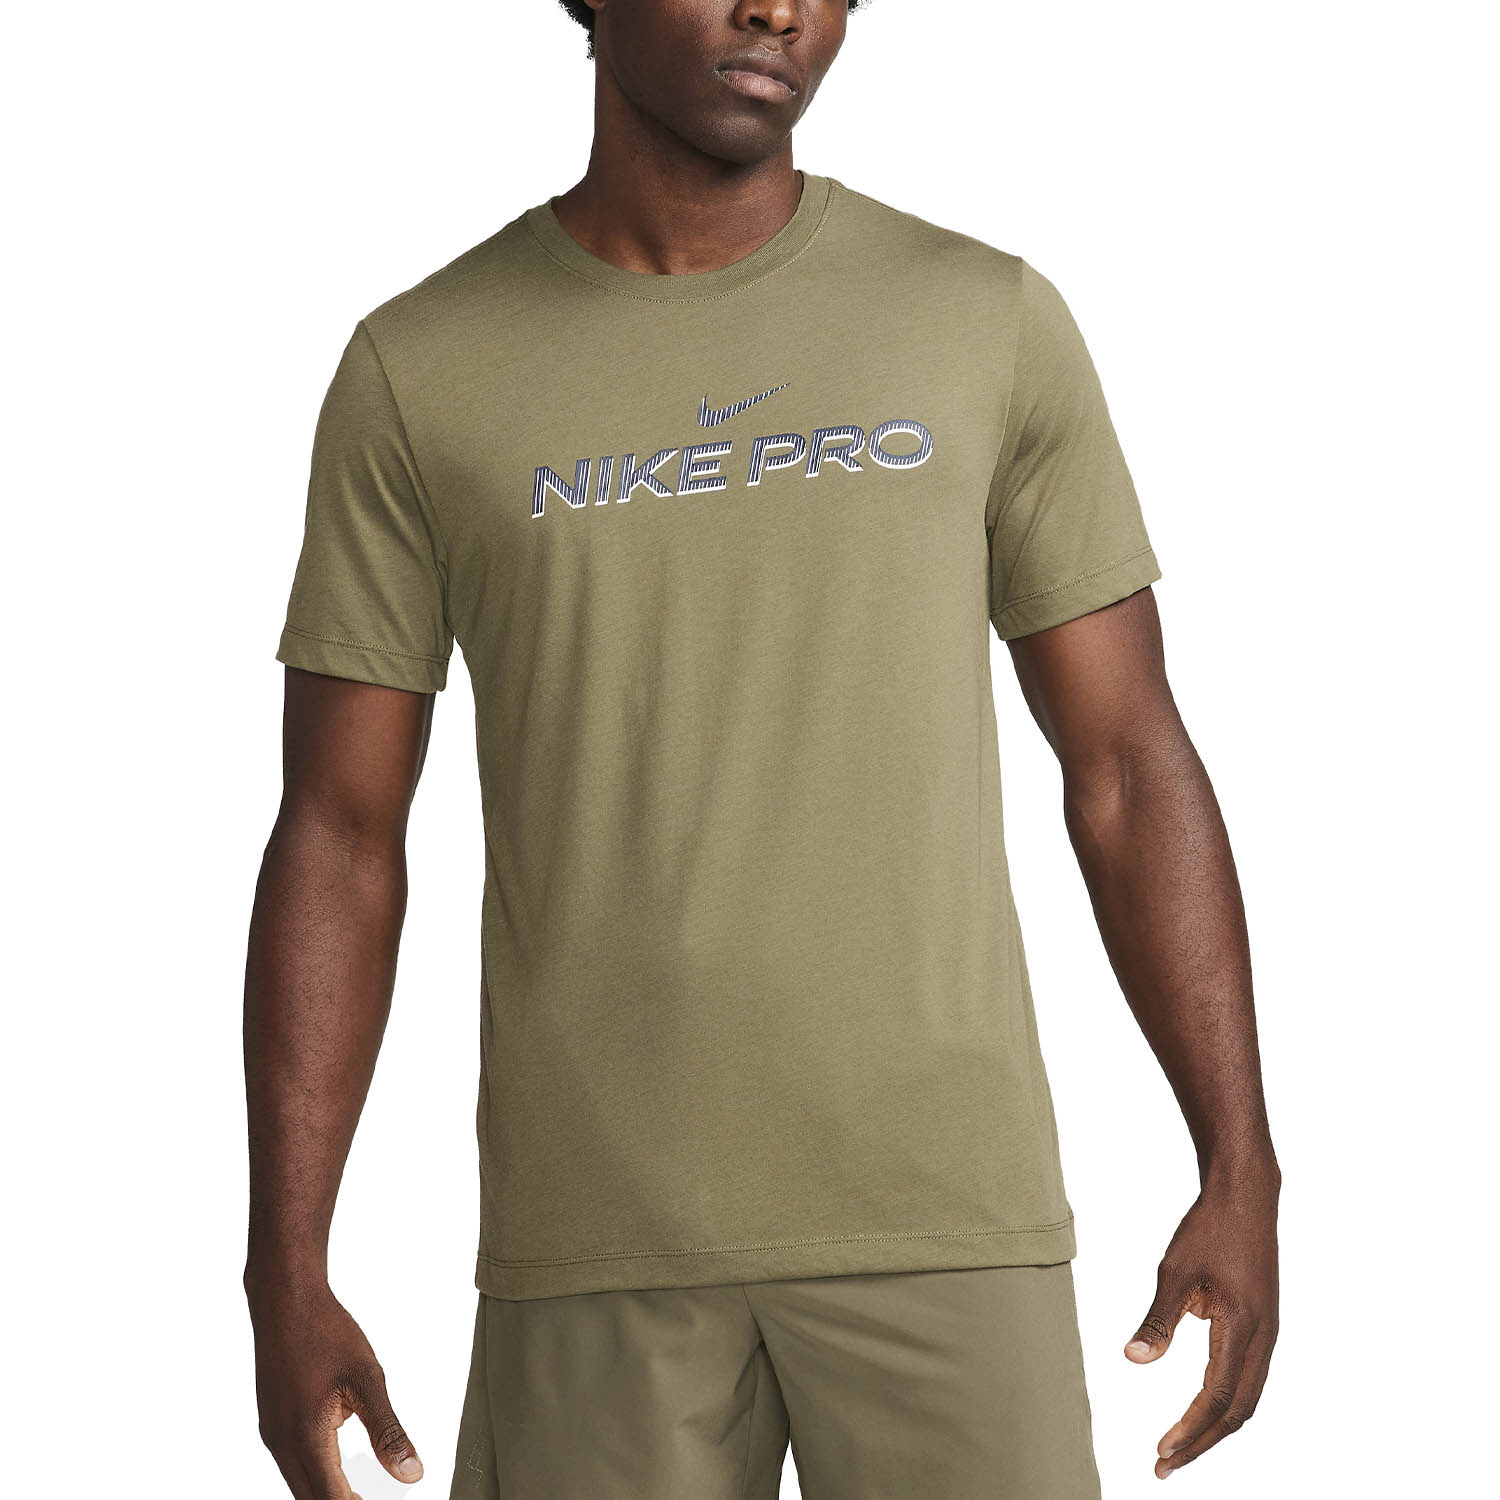 Nike Pro Fitness Camiseta - Medium Olive